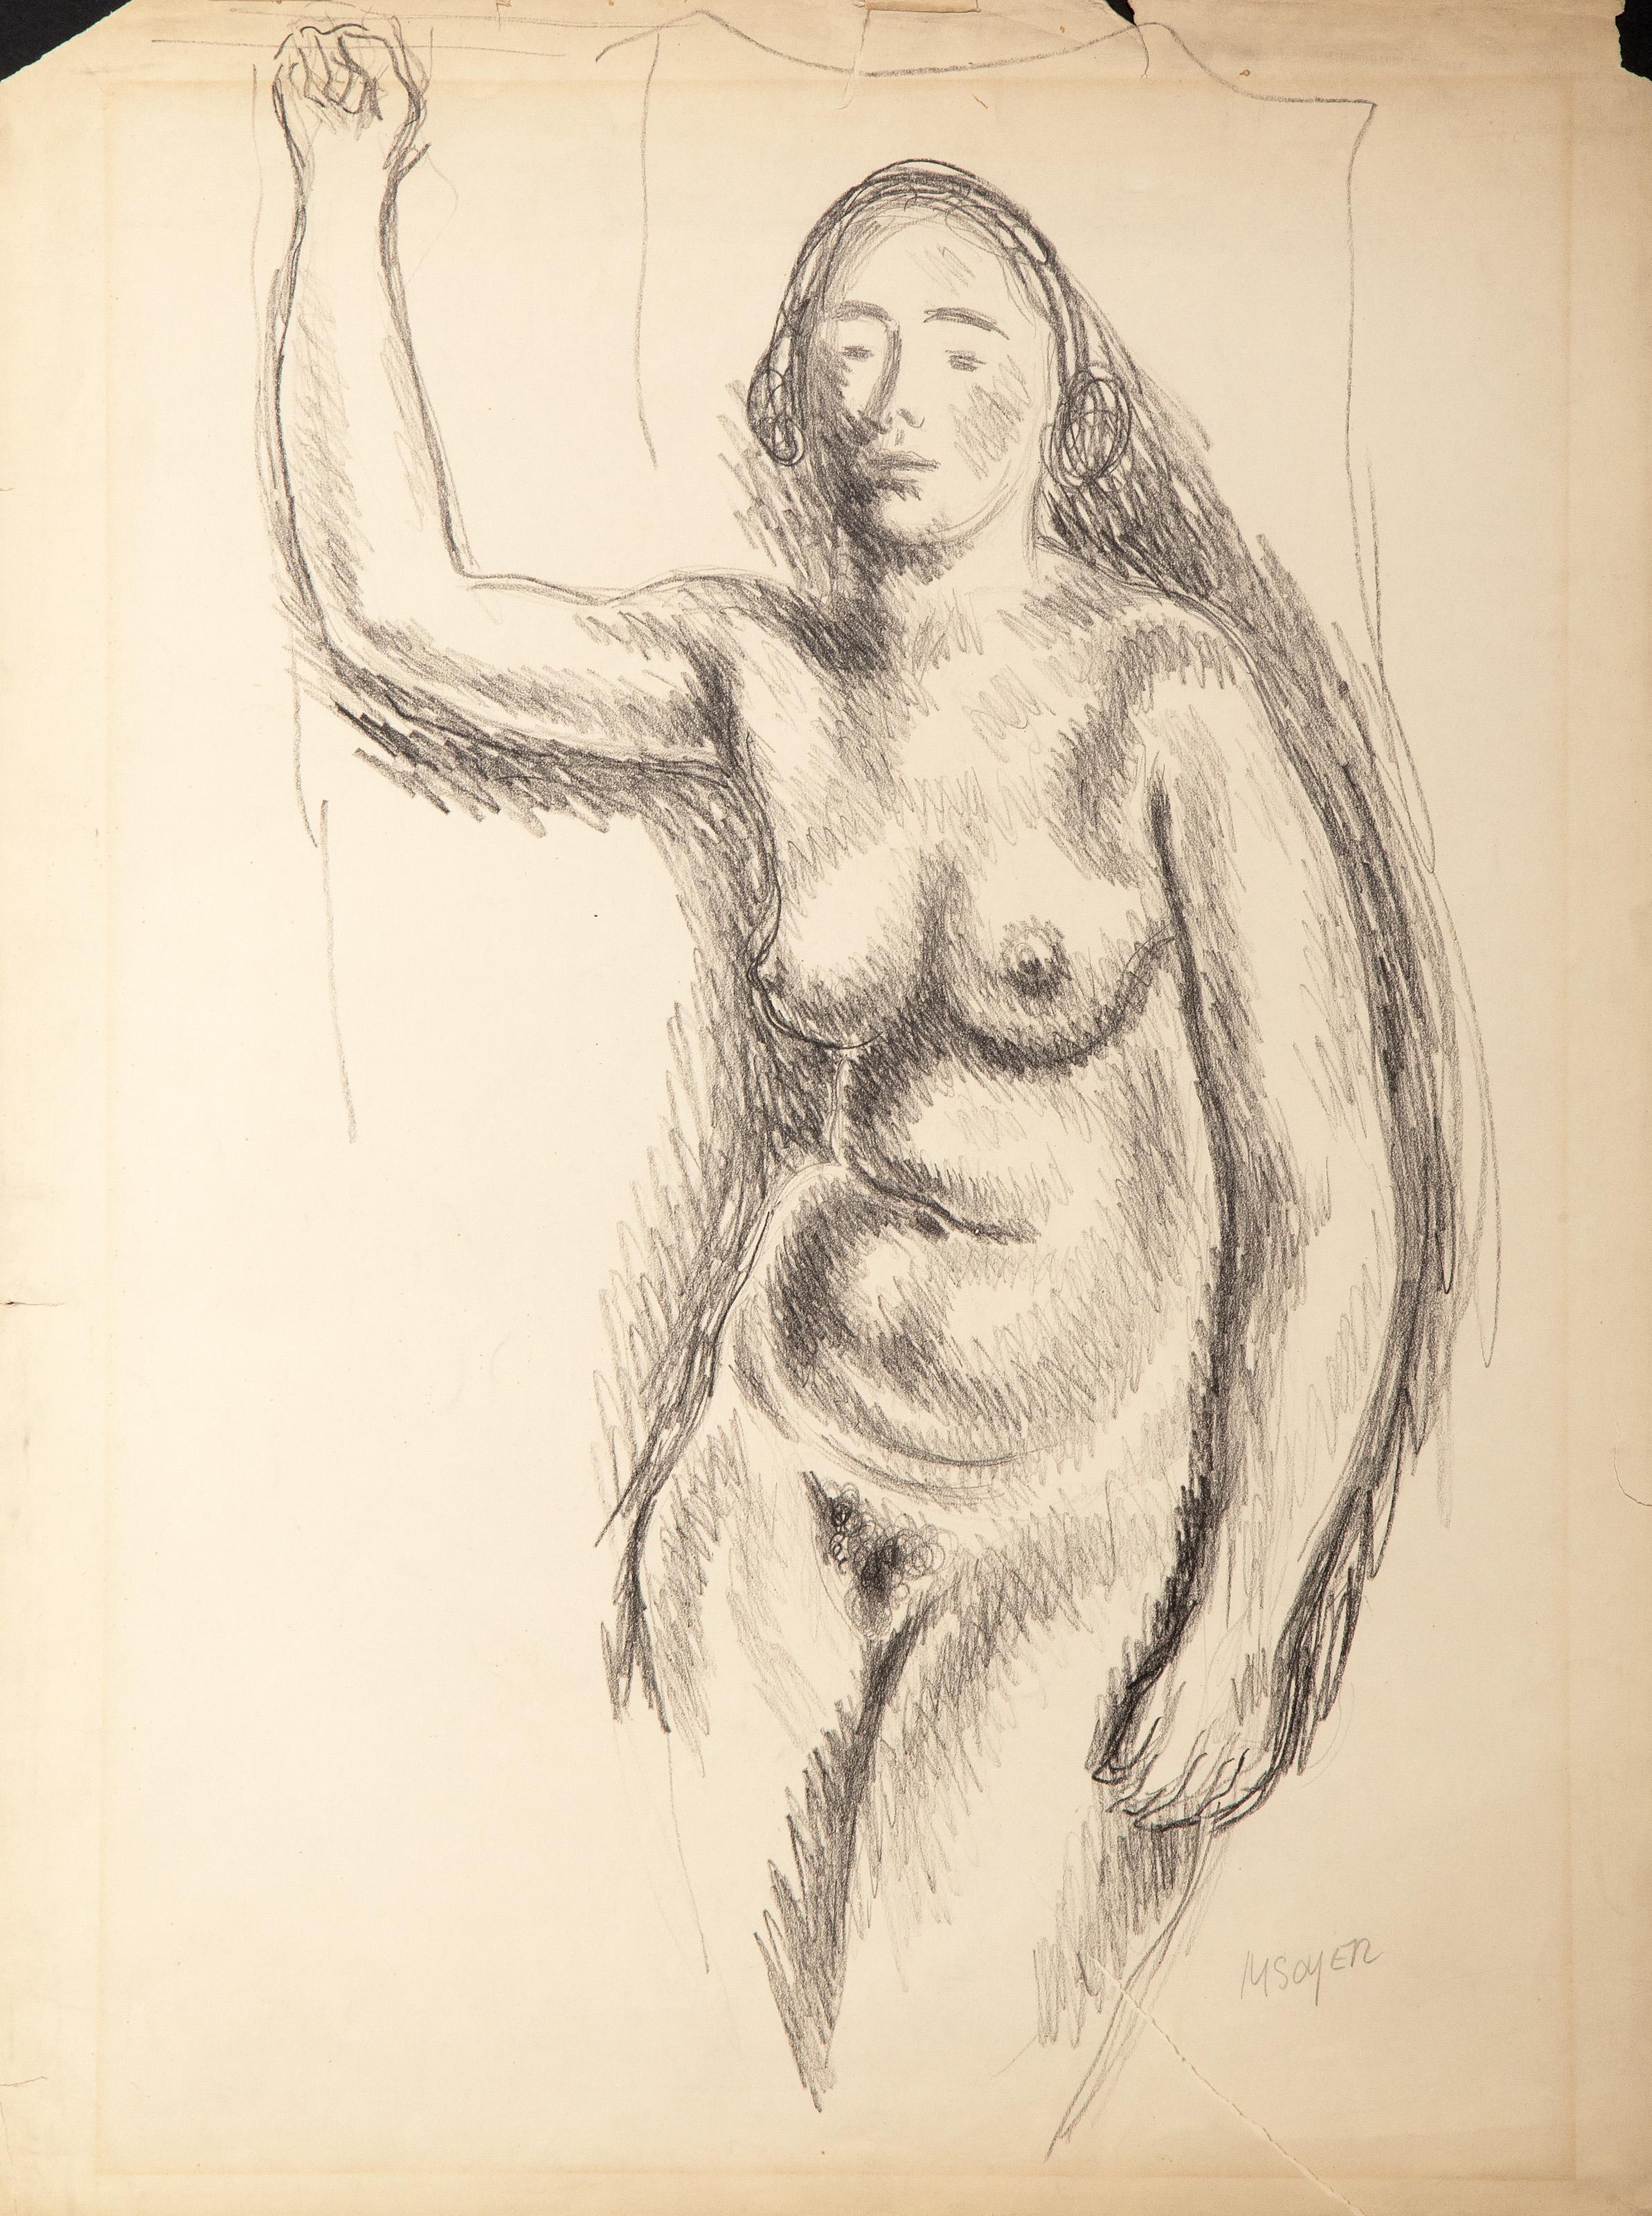 Moses Soyer, Américain (1899 - 1974) -  Femme nue. Moyen : Dessin à la mine de plomb sur papier, signé au crayon en bas à droite, Taille : 29.25 x 19.75 in. (74.3 x 50.17 cm) 